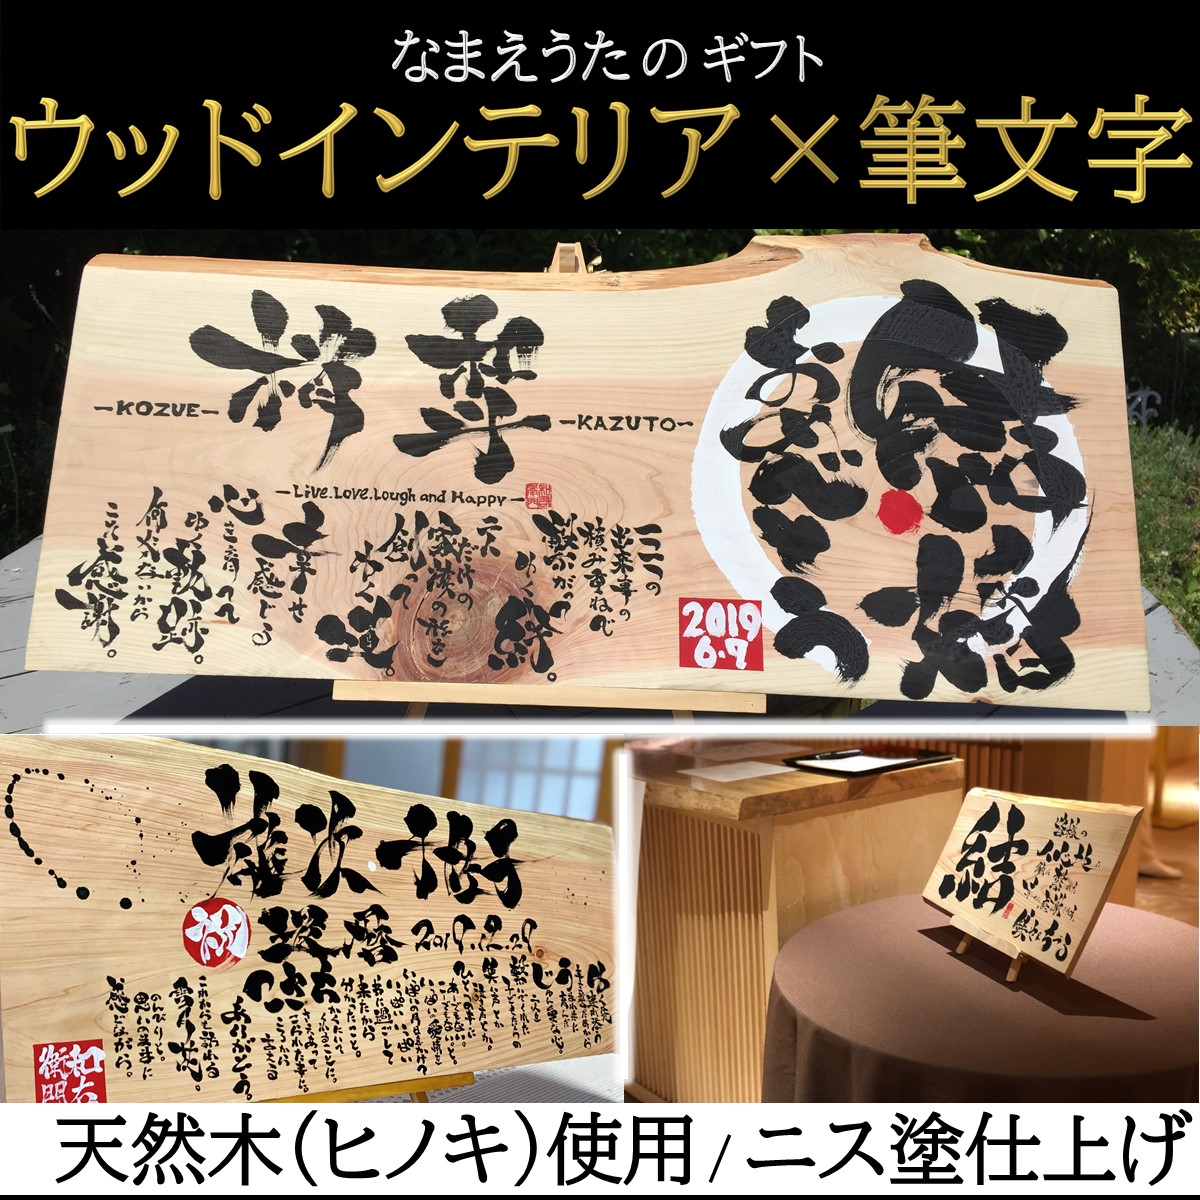 ウッドインテリア 筆文字 名前詩ギフト ヒノキの天然木使用 Iichi ハンドメイド クラフト作品 手仕事品の通販